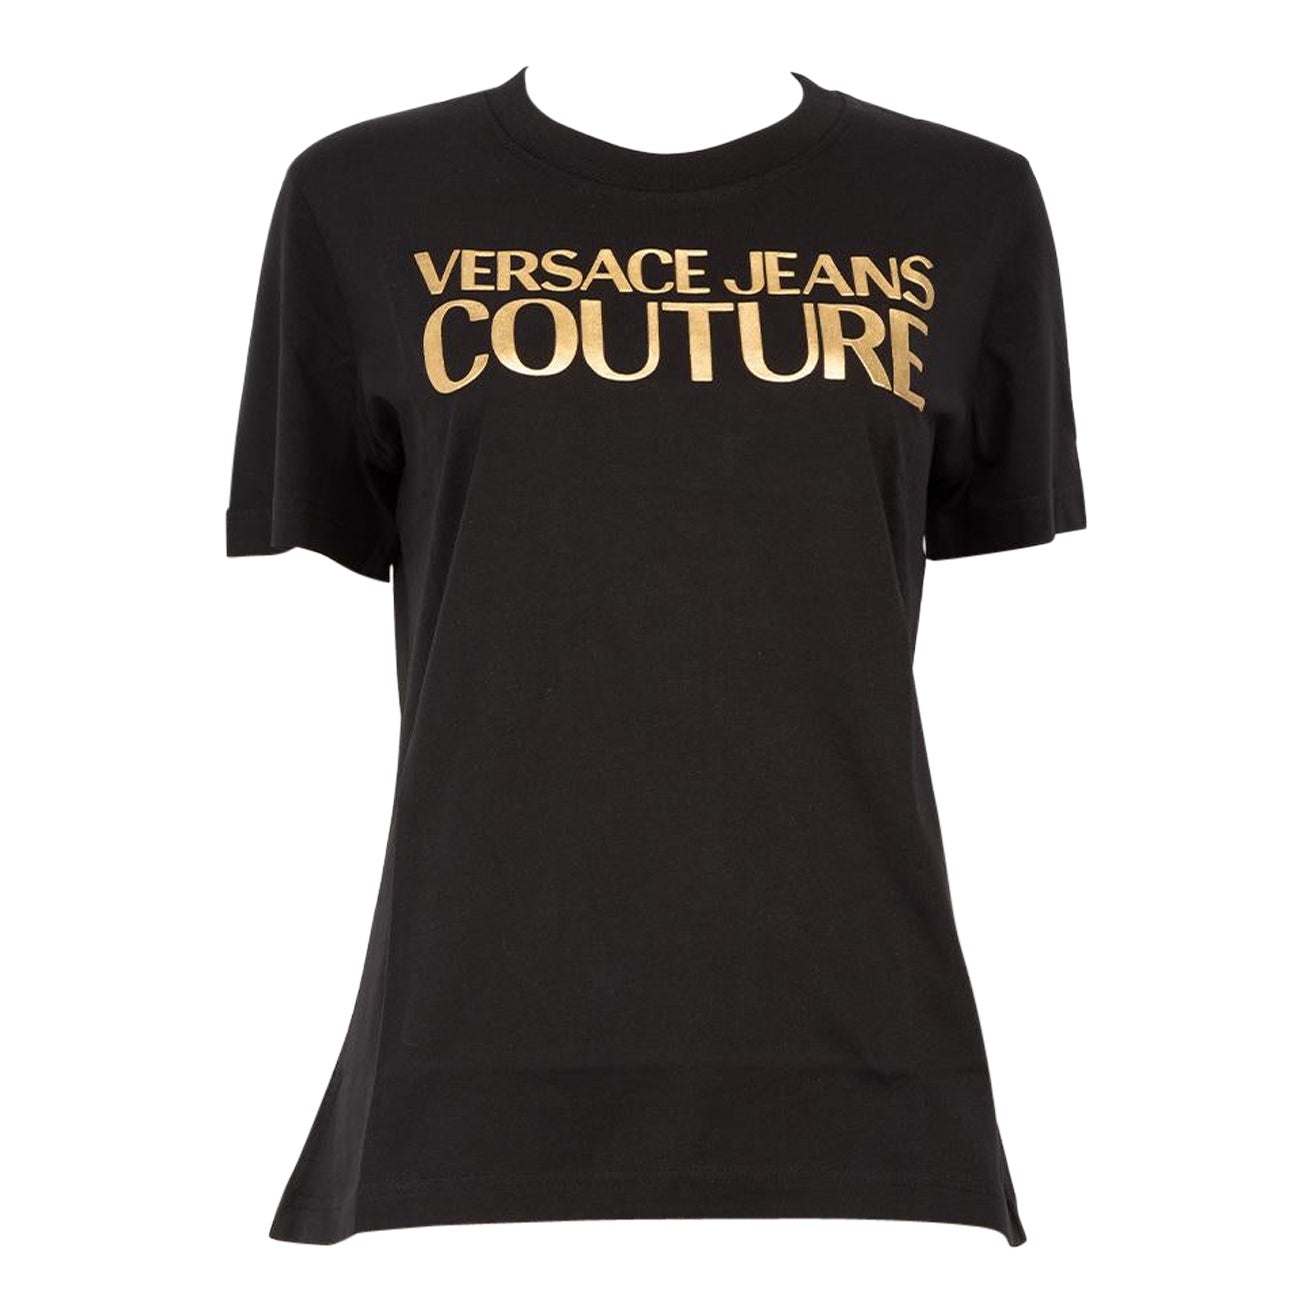 How do I spot a fake Versace T-shirt?